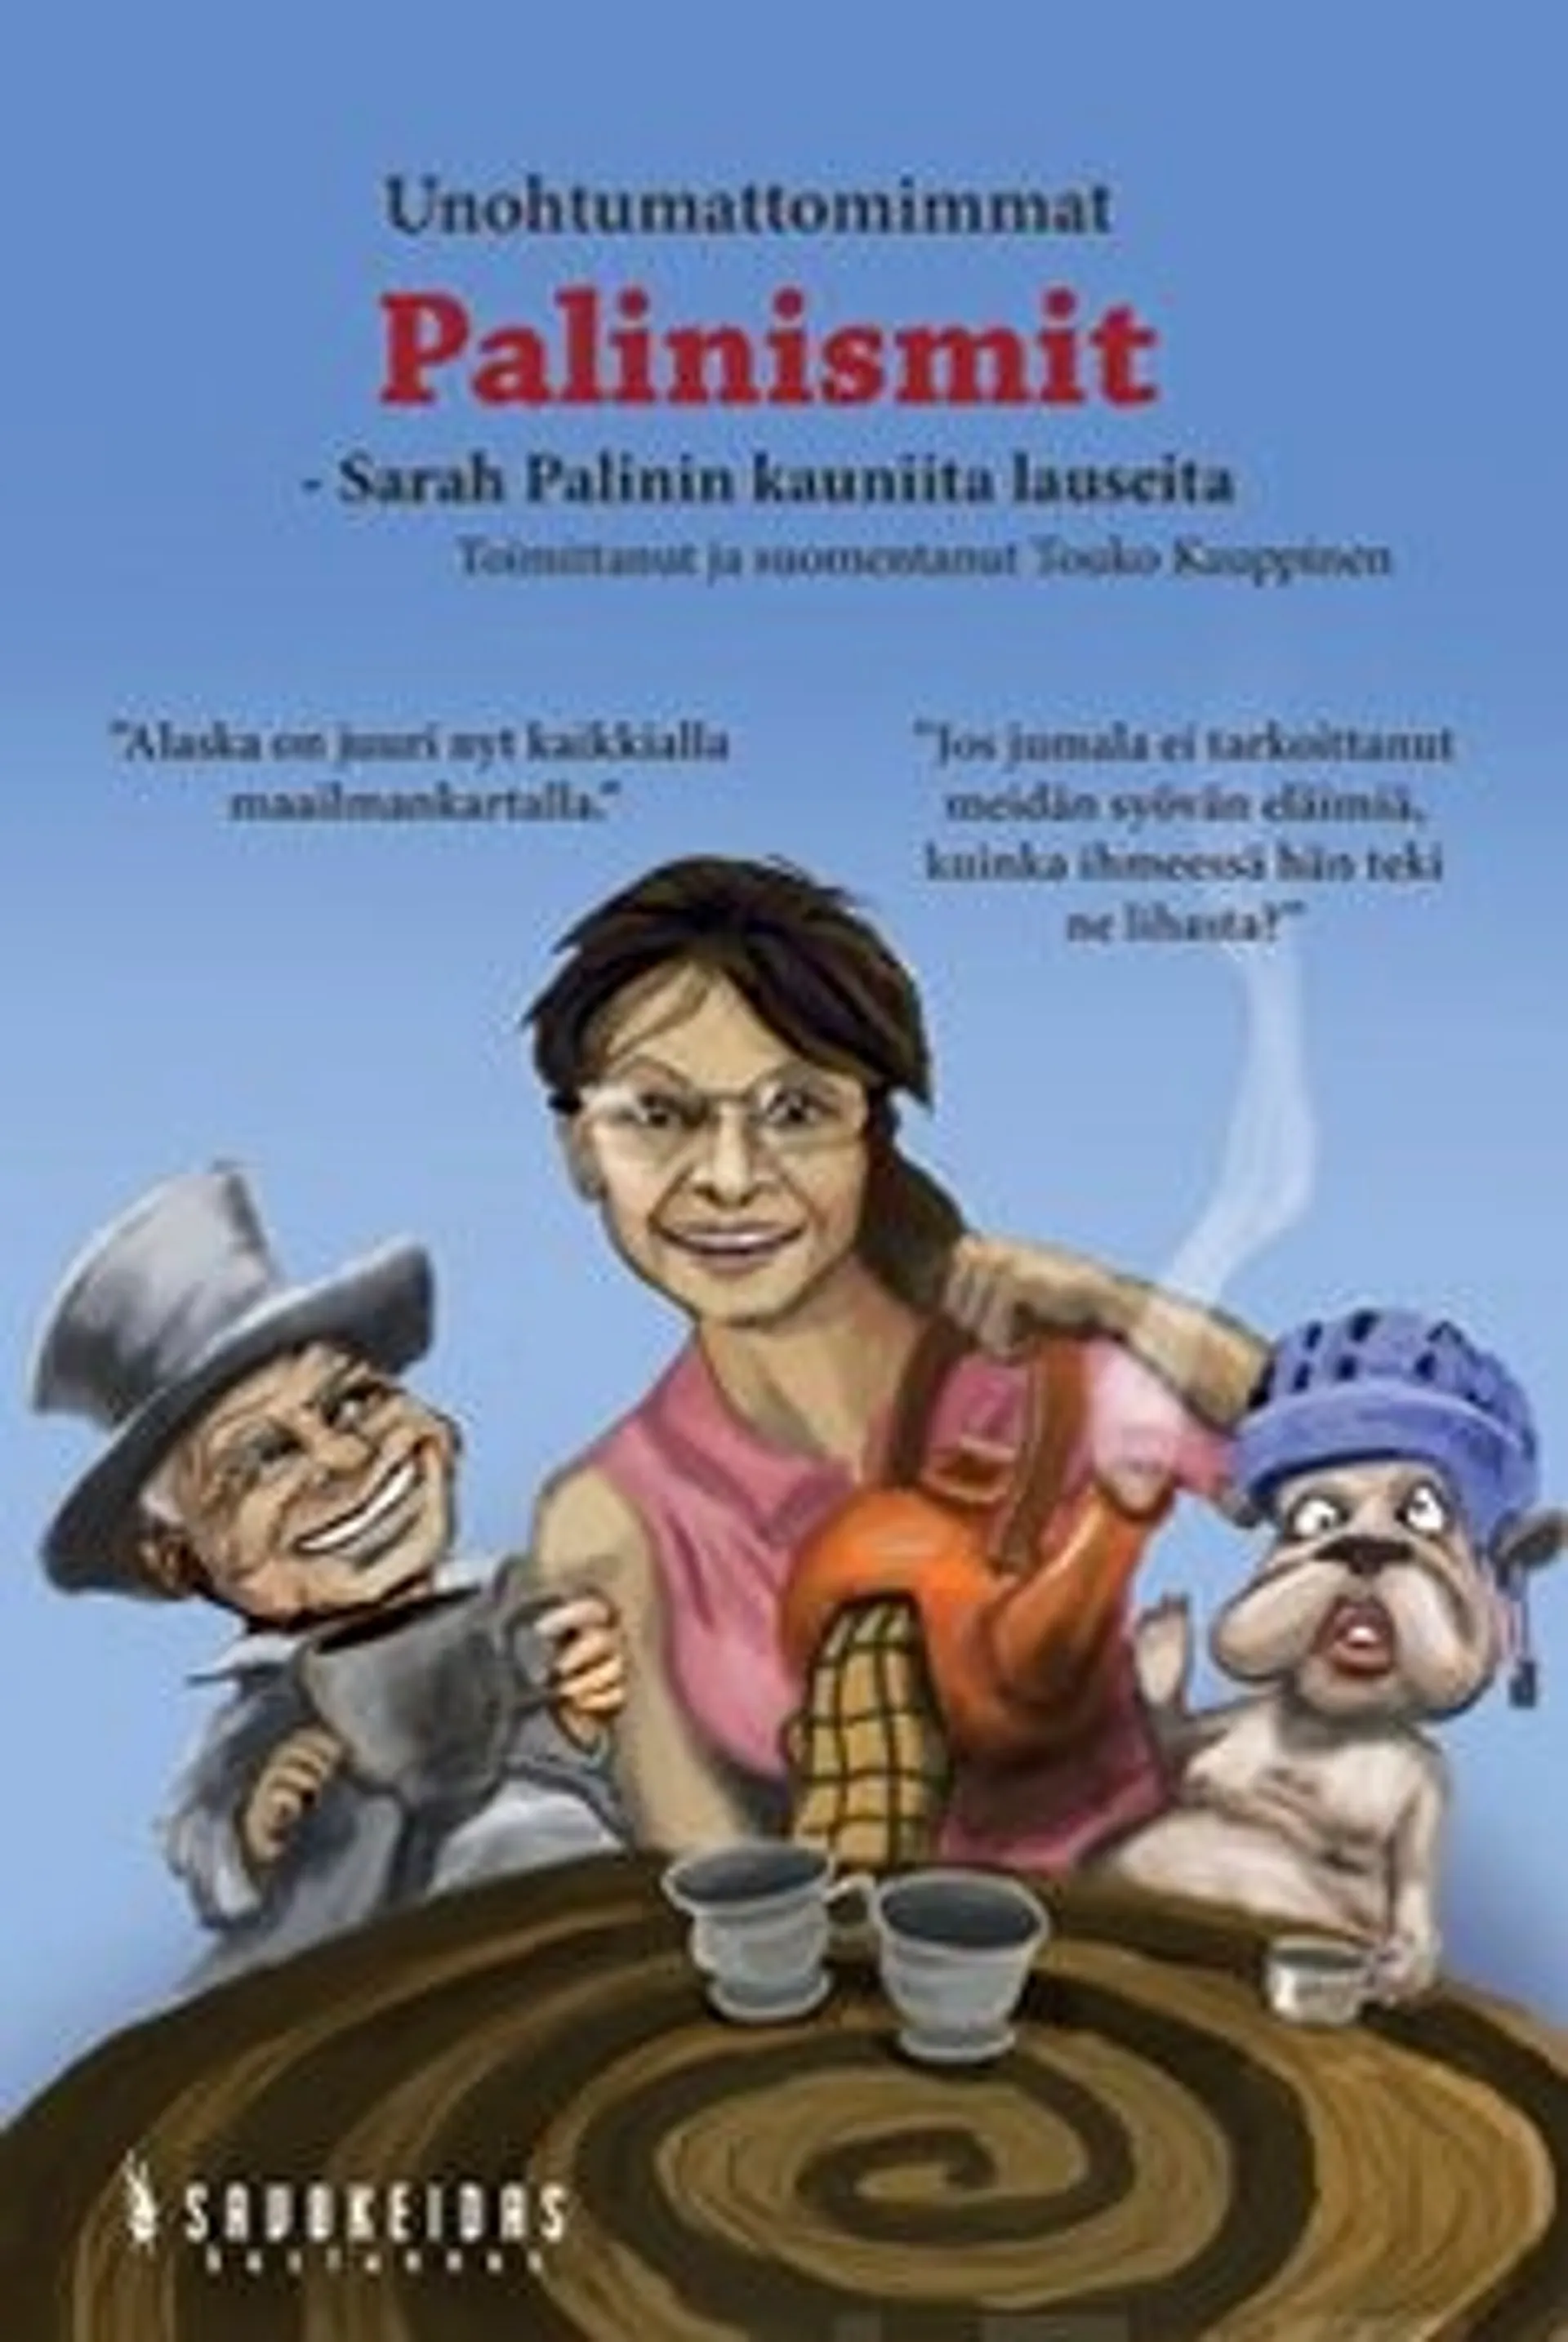 Palin, Unohtumattomimmat palinismit - Sarah Palinin lauseita